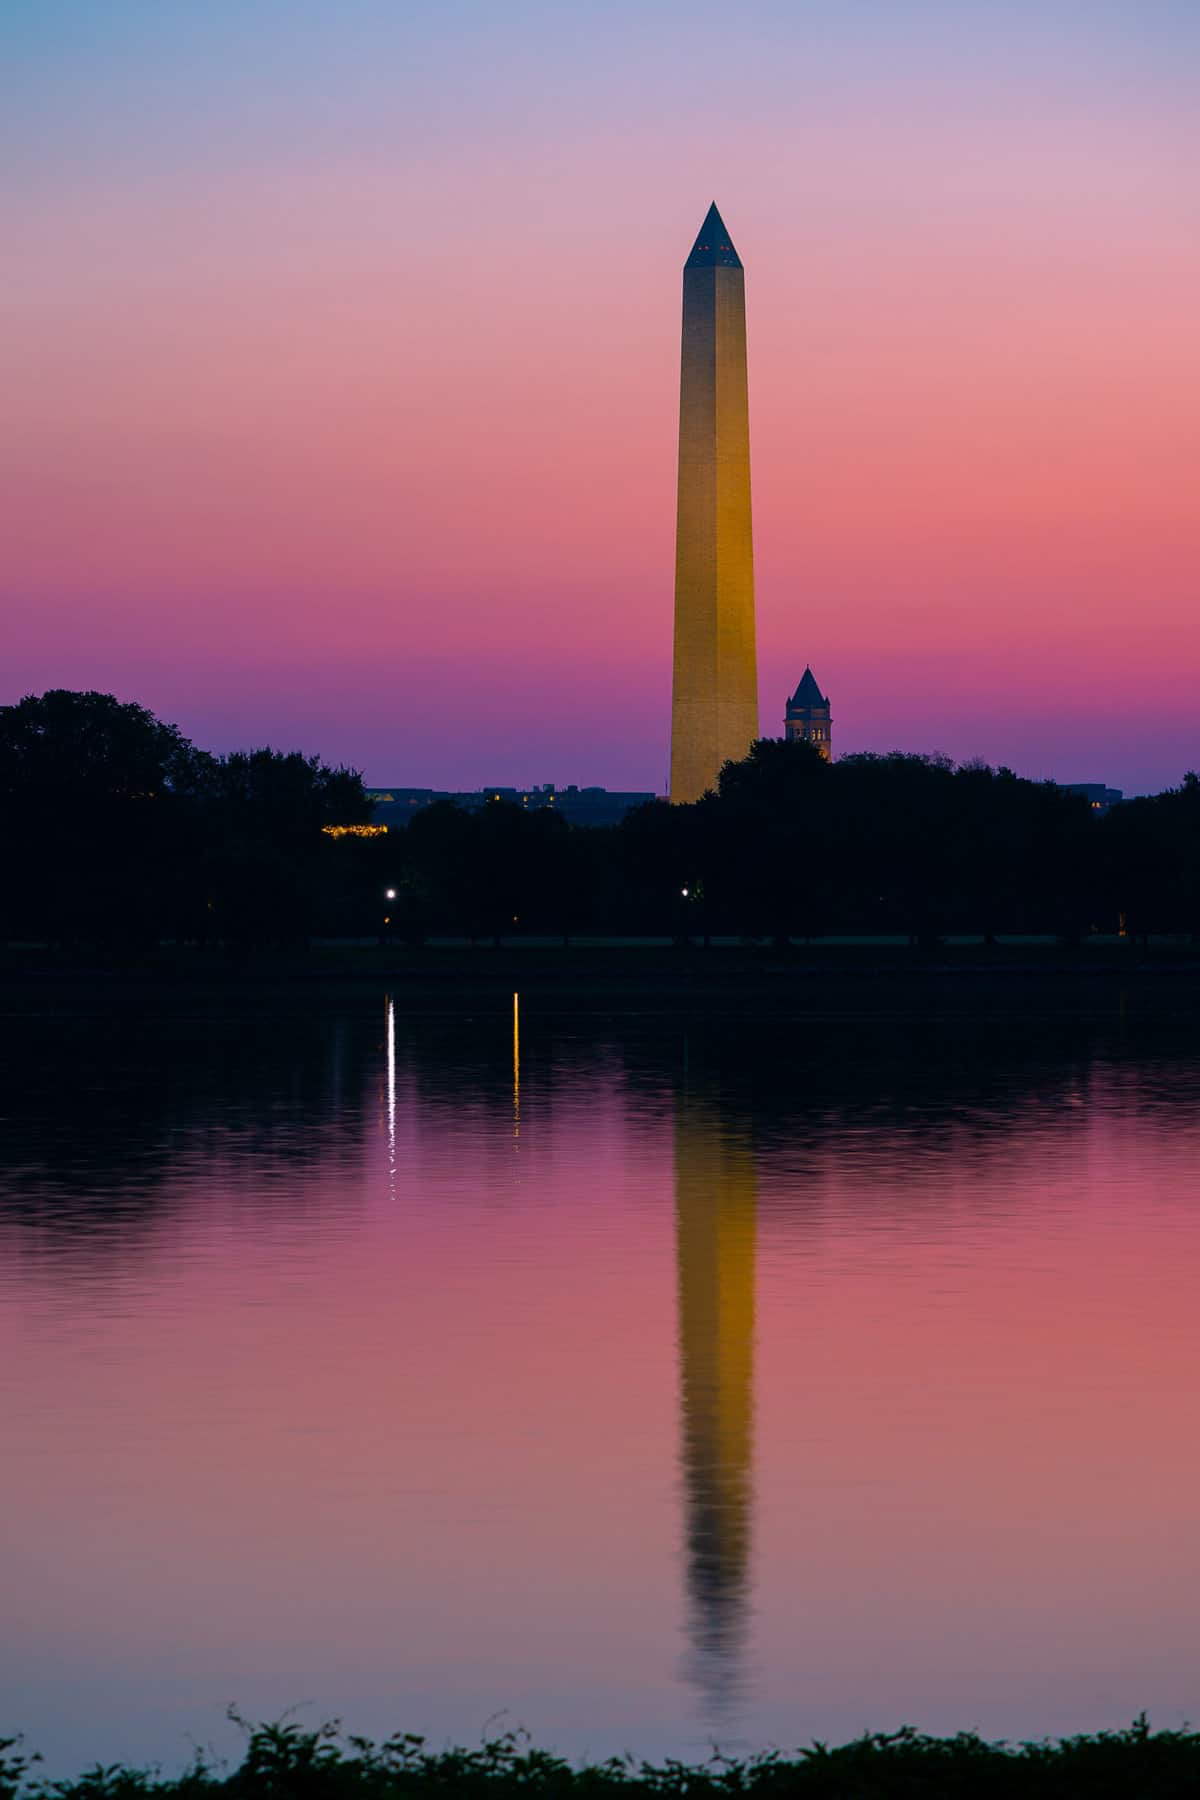 Washington's Reflection